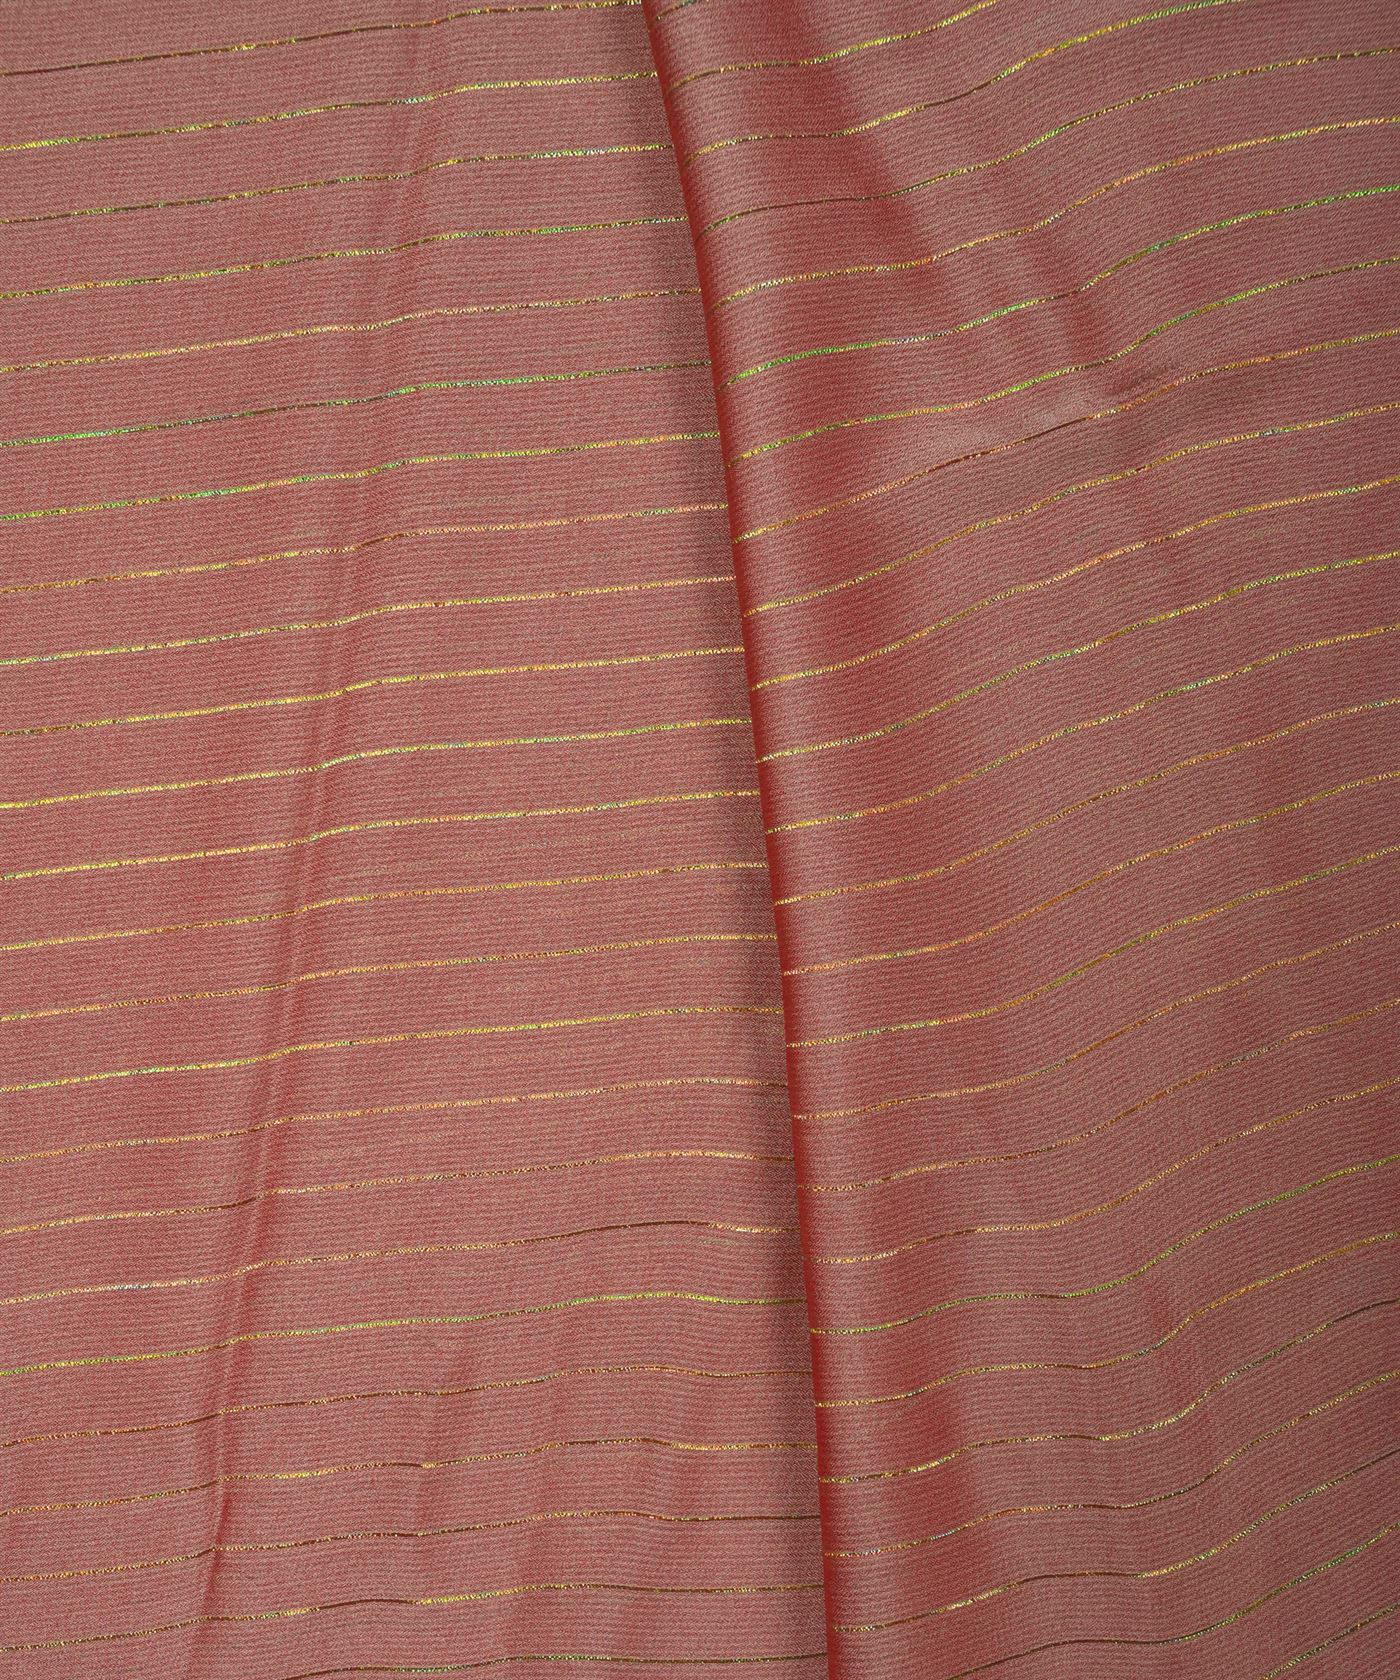 Dusty Peach Chiffon fabric with Film Lining